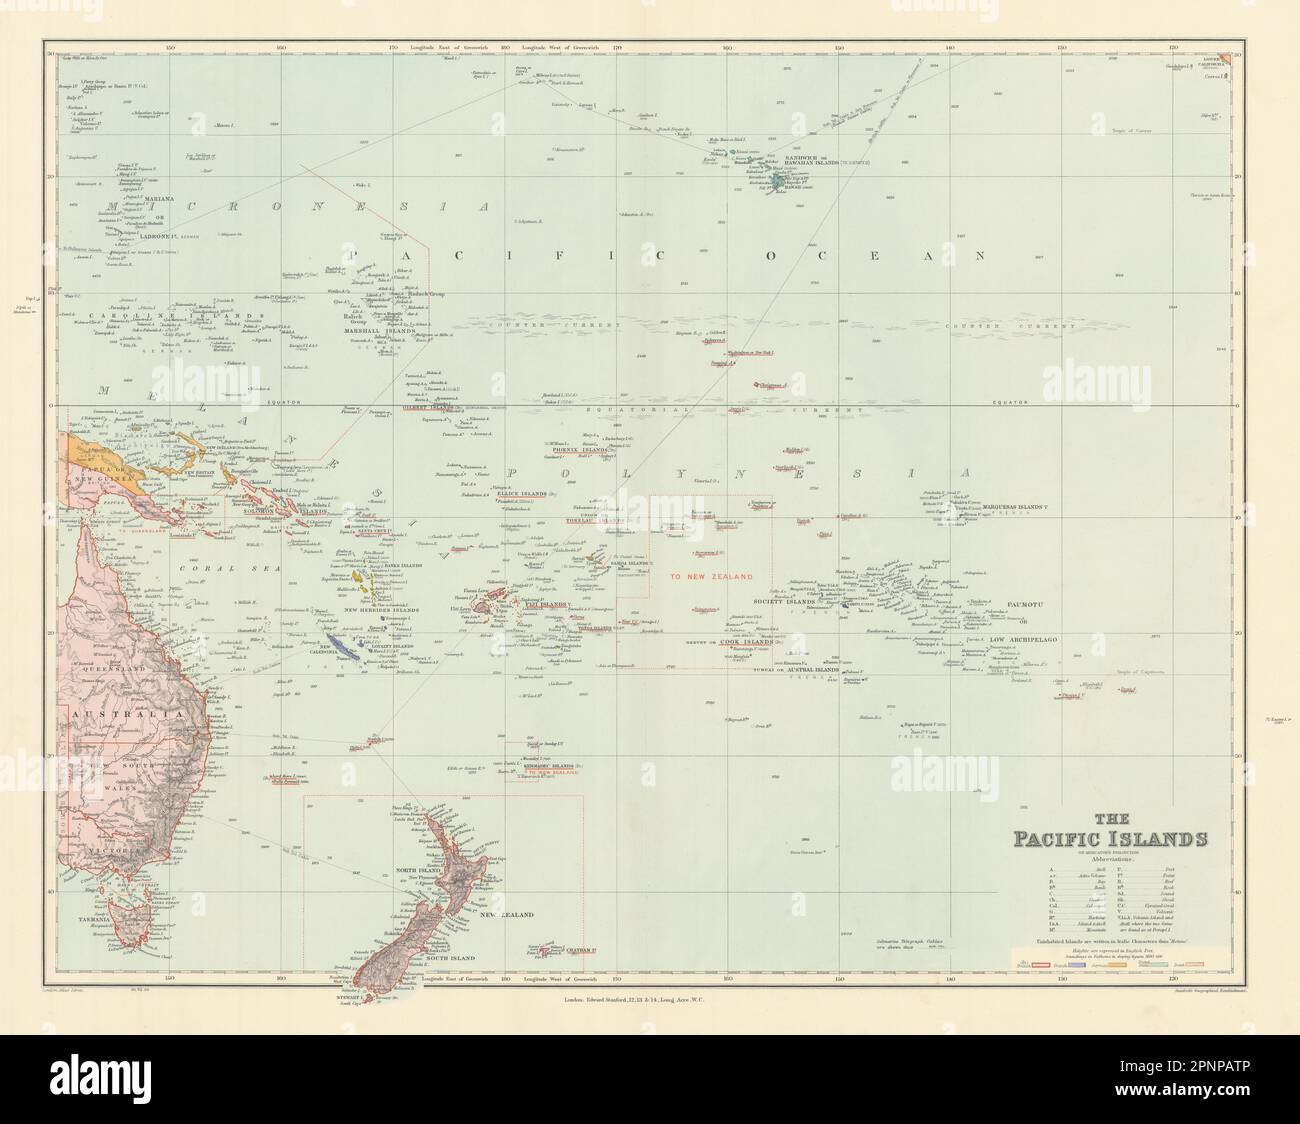 Îles du Pacifique. Mélanésie Polynésie Micronésie. Hawaï. STANFORD 1904 vieille carte Banque D'Images